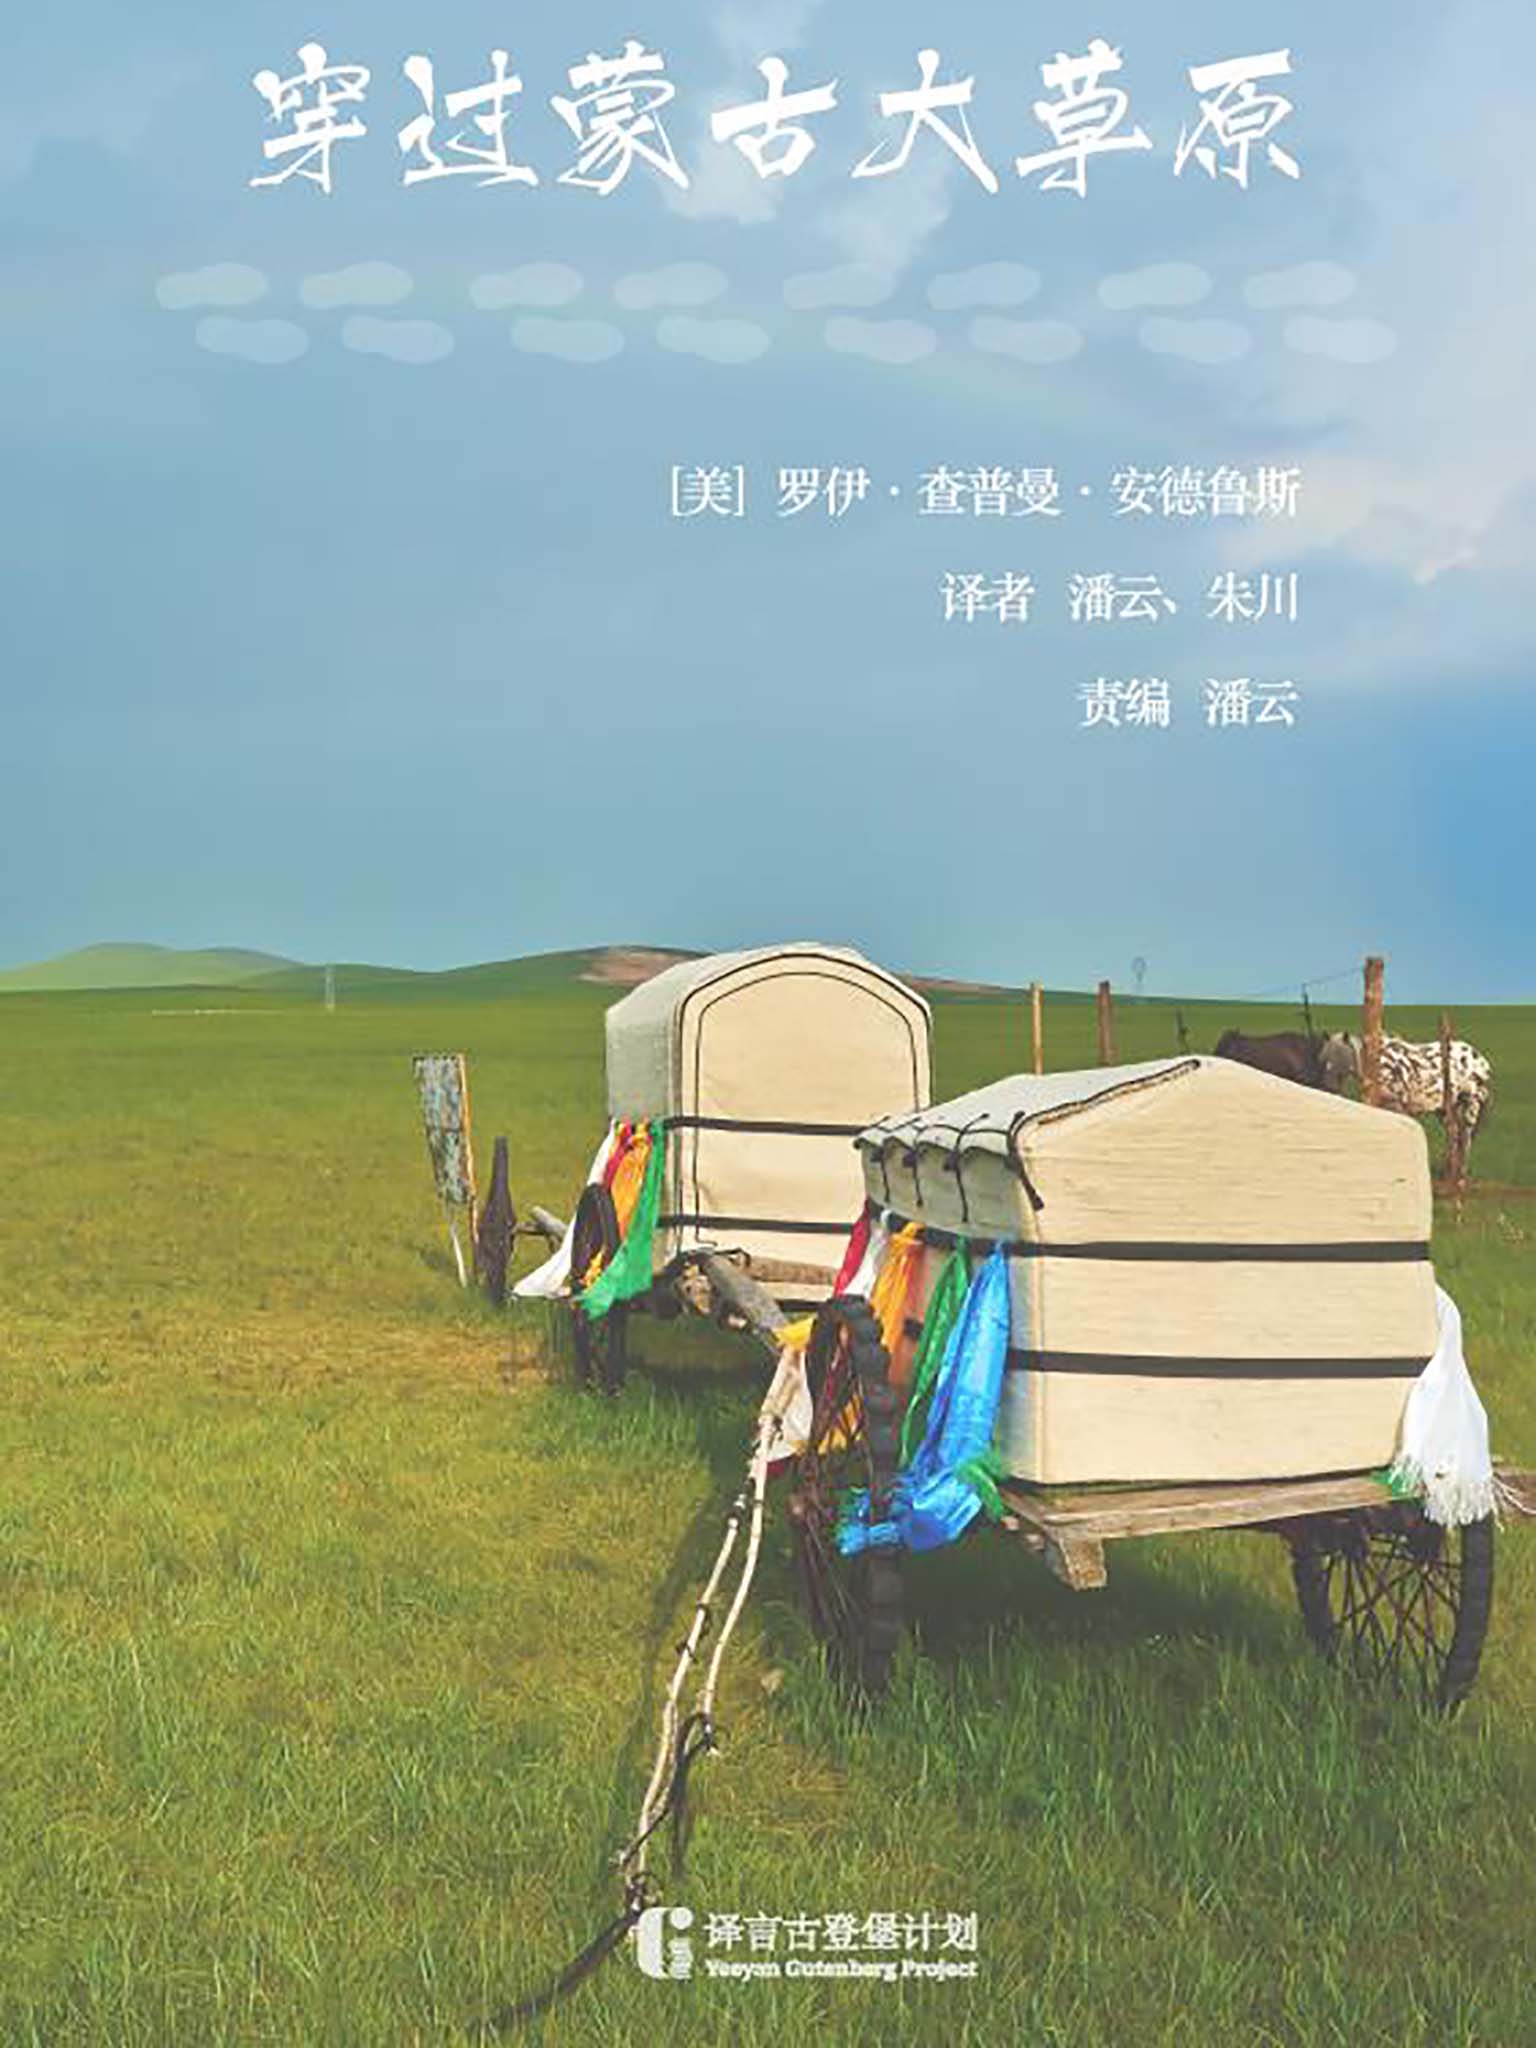 穿过蒙古大草原